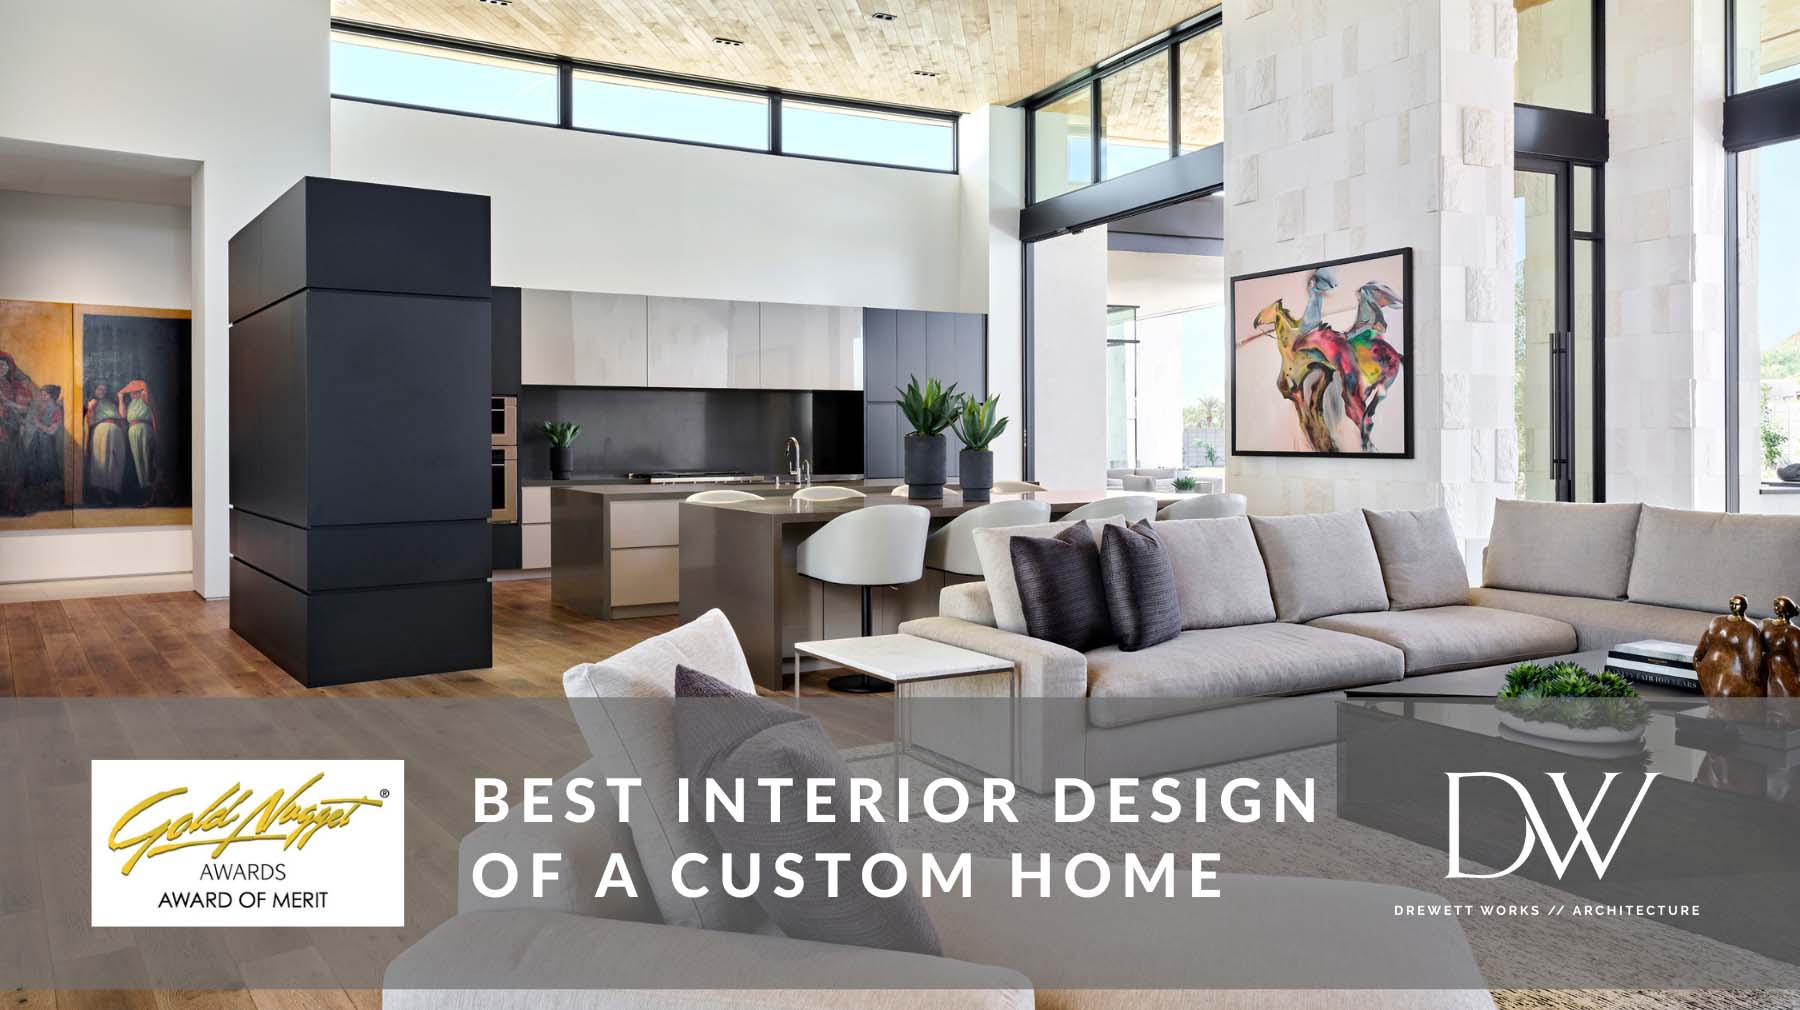 Stone Radius Award of Merit Best Interior Design of a Custom Home